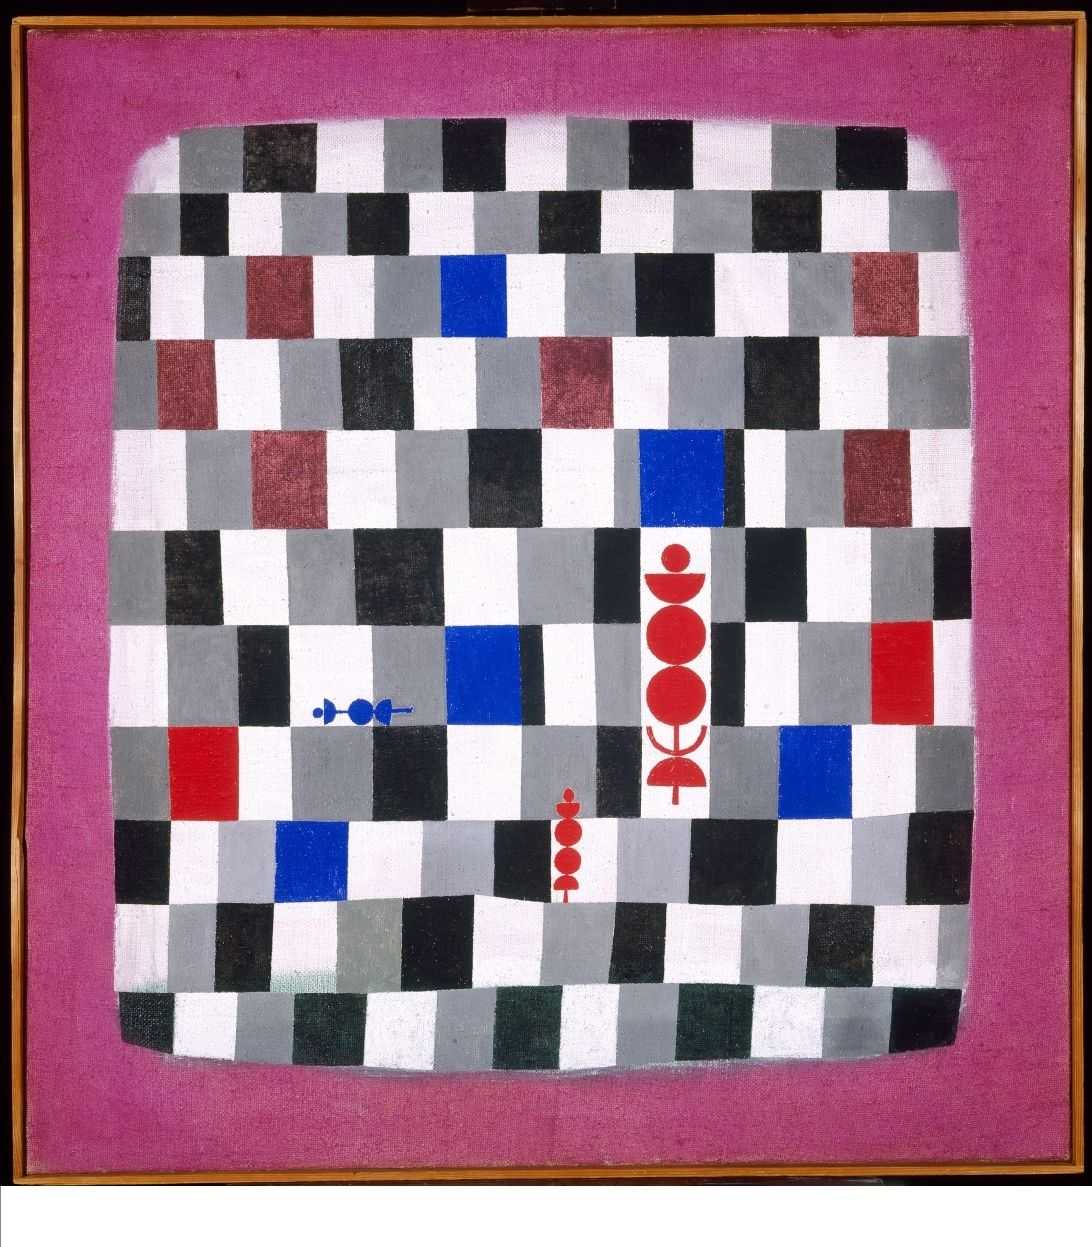 'Fi de partida': els escacs i les avantguardes se citen a la Fundació Miró